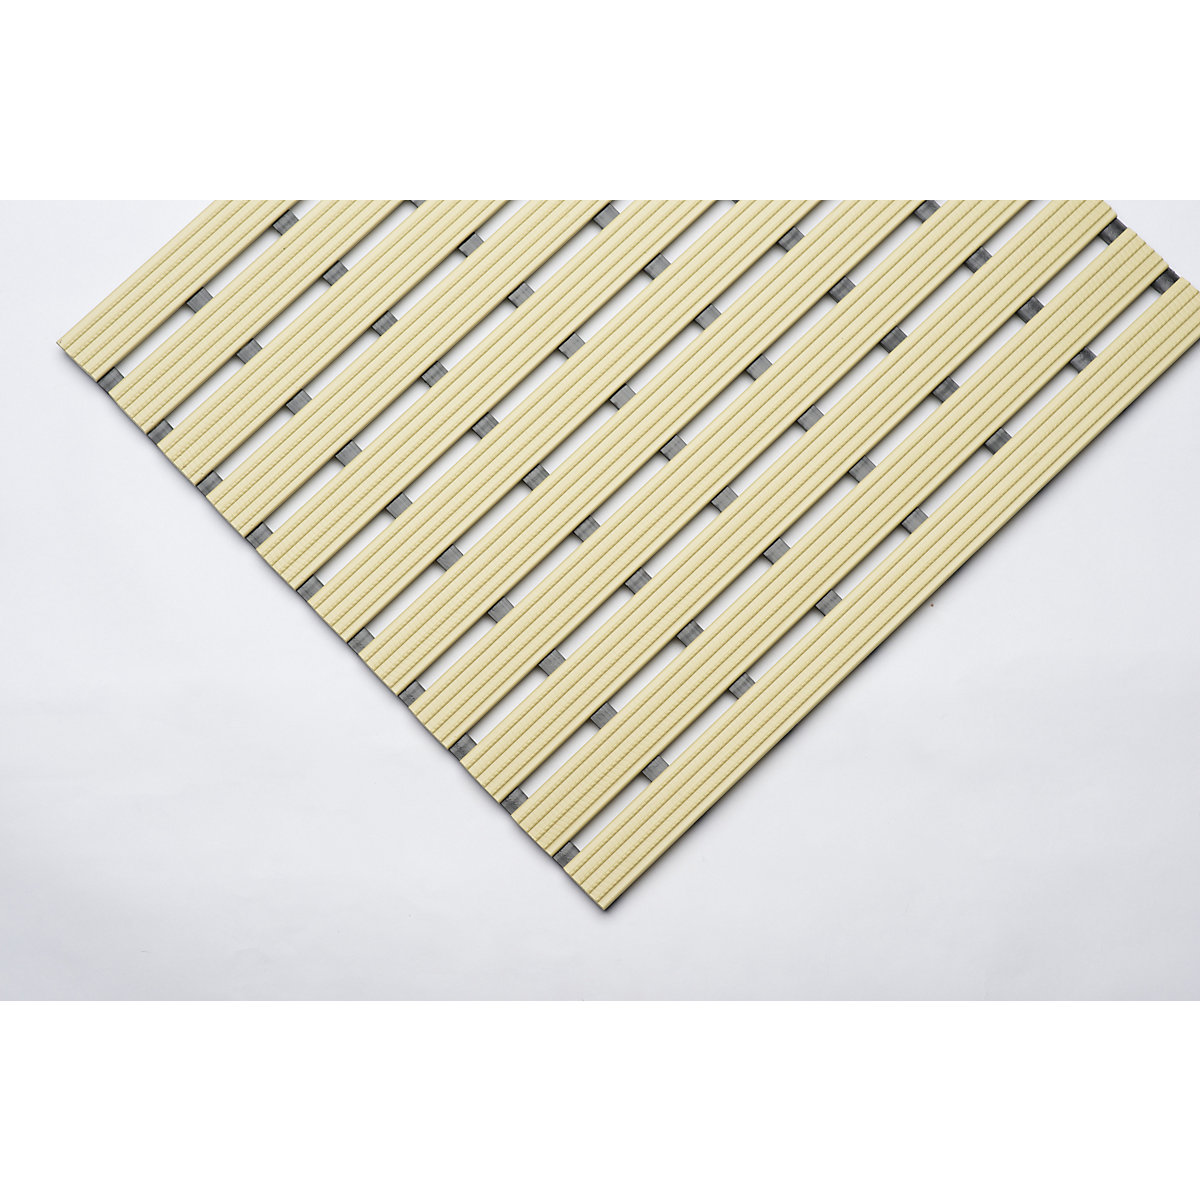 PVC-Profilmatte, pro lfd. m, Lauffläche aus Hart-PVC, rutschsicher, Breite 600 mm, beige-8